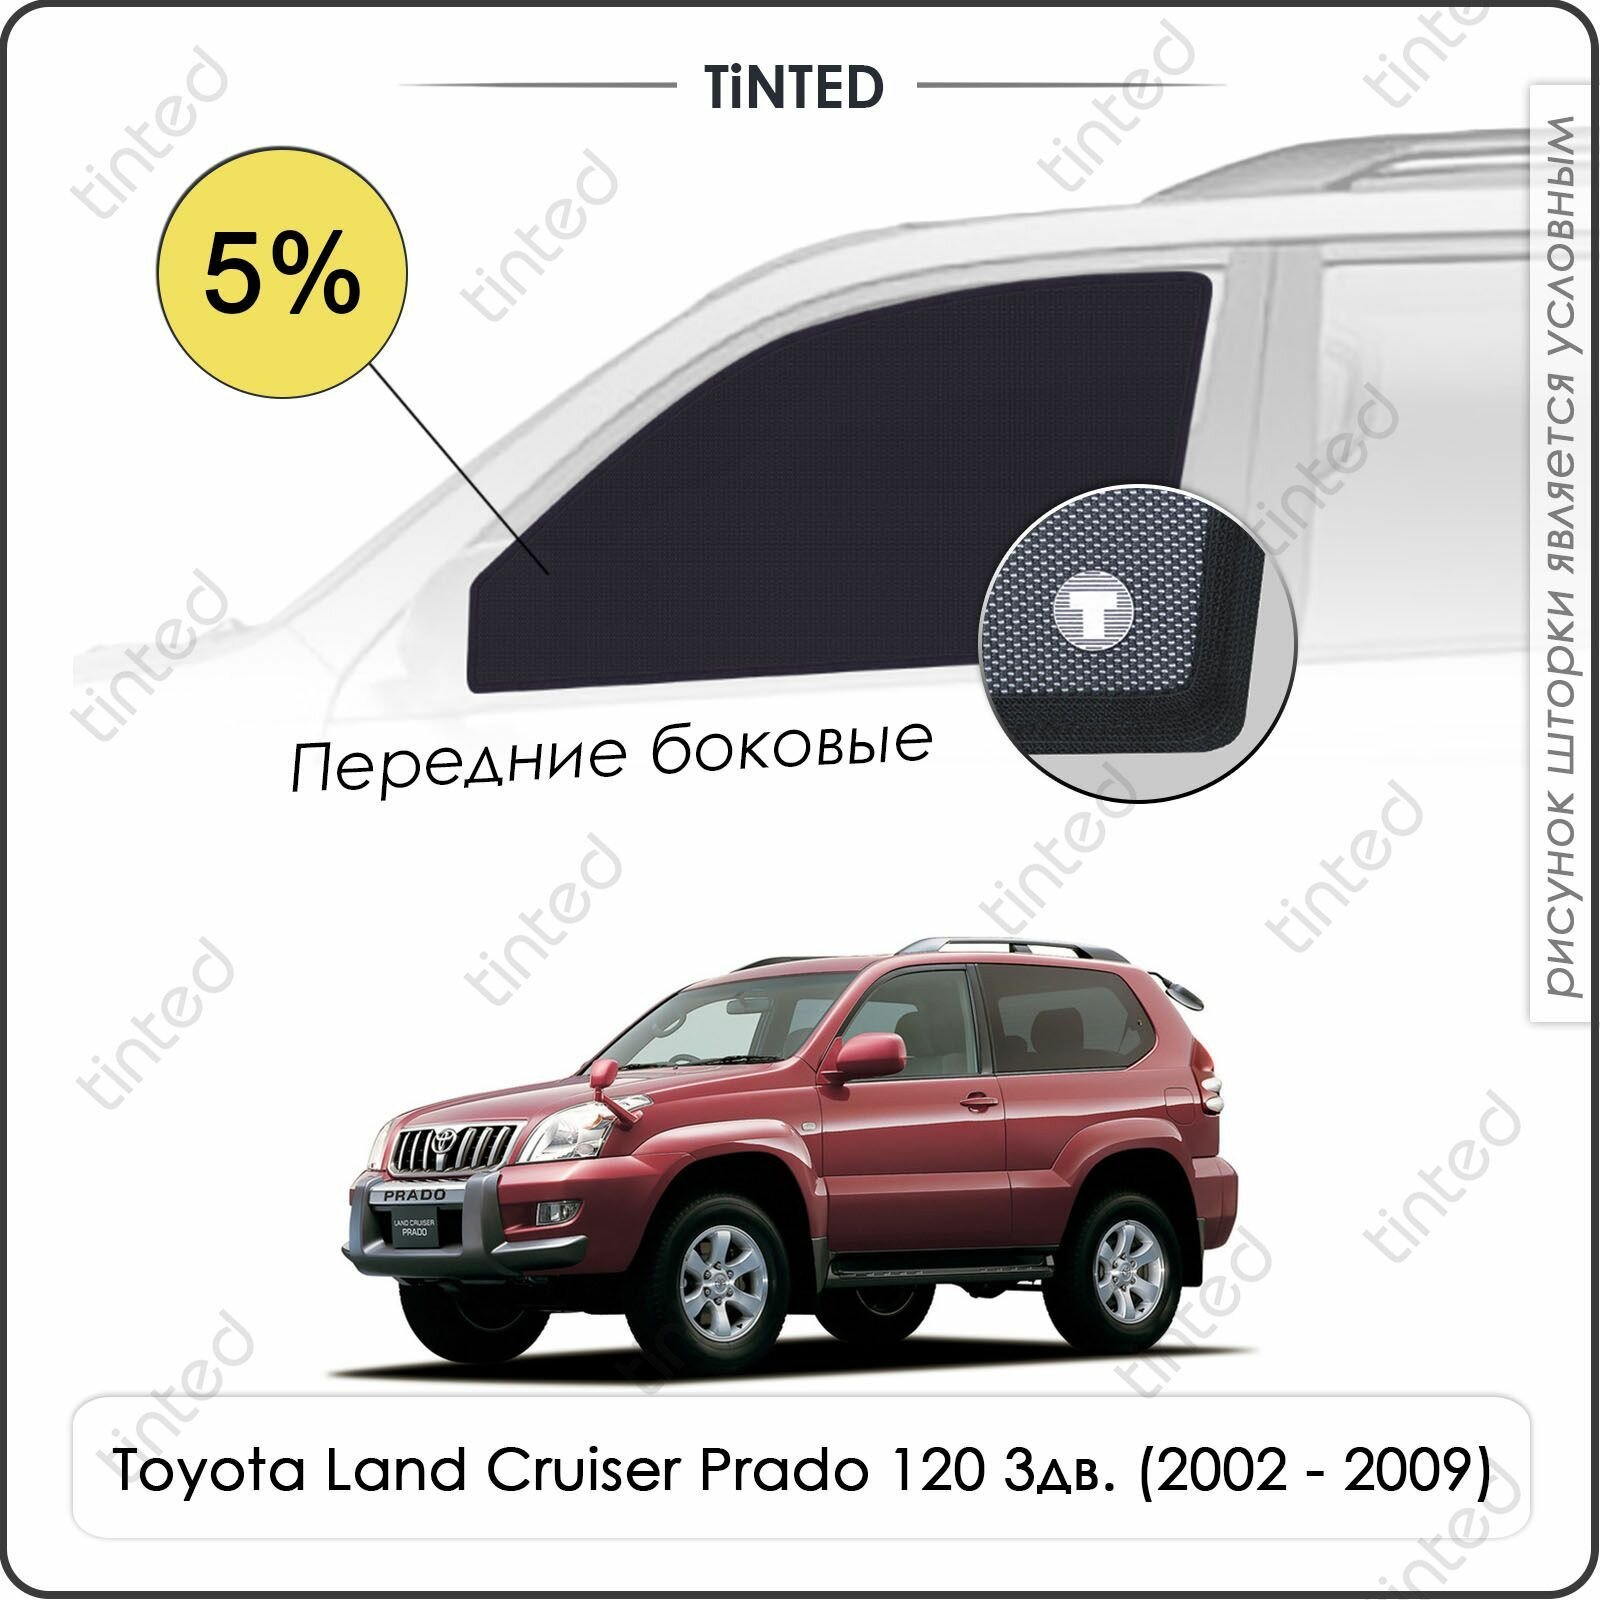 Шторки на автомобиль солнцезащитные Toyota Land Cruiser Prado 120 Внедорожник 3дв. (2002 - 2009) на передние двери 5% сетки от солнца в машину тойота лэнд крузер Каркасные автошторки Premium